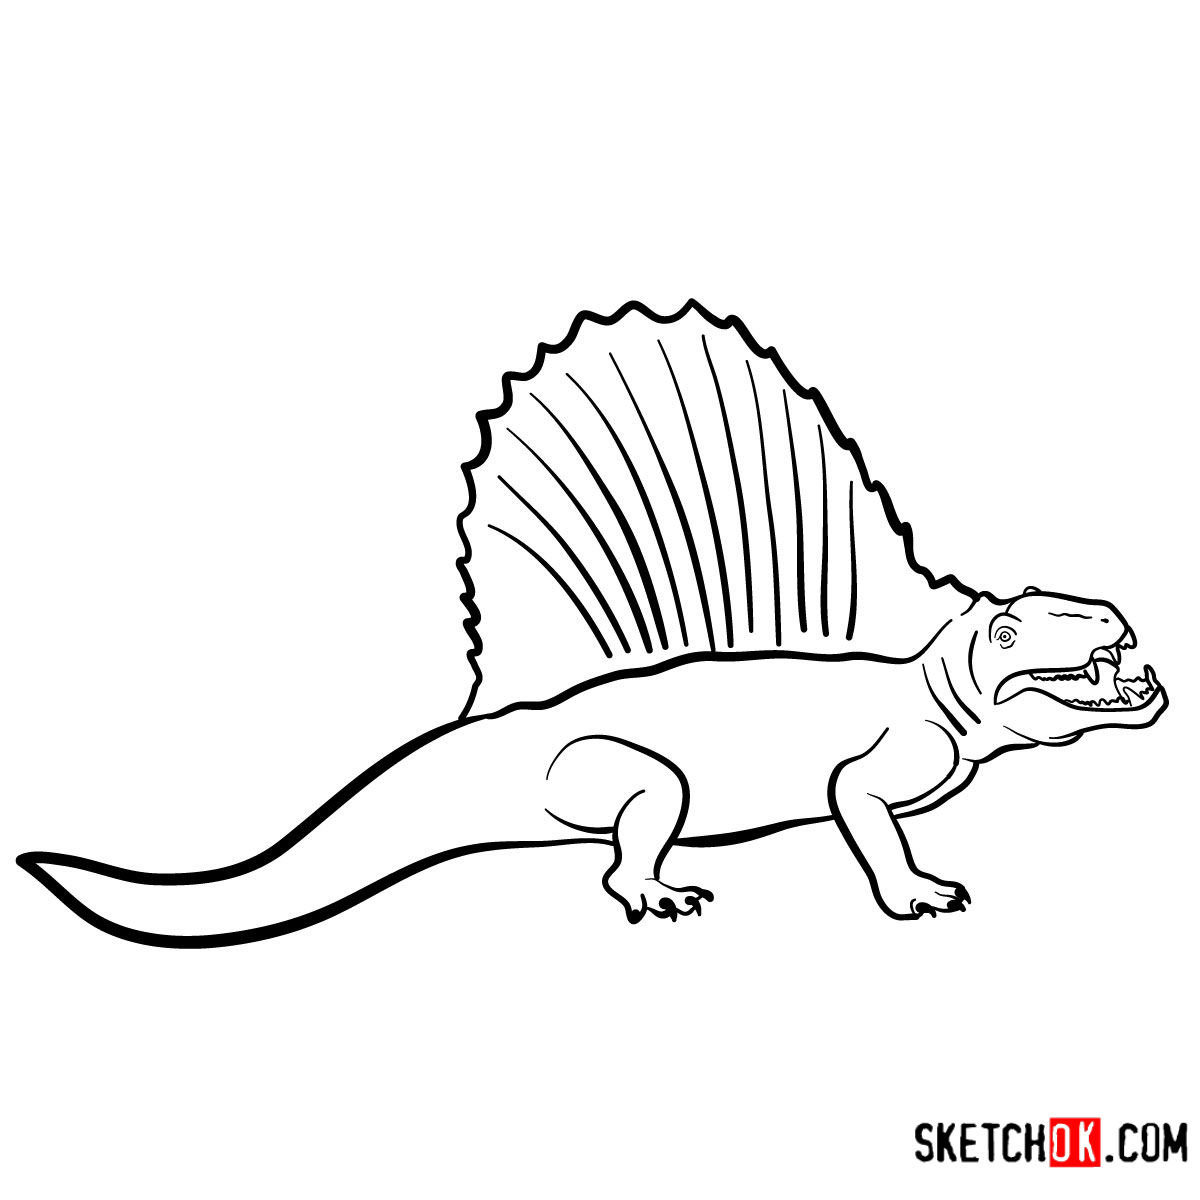 How to draw a Dimetrodon